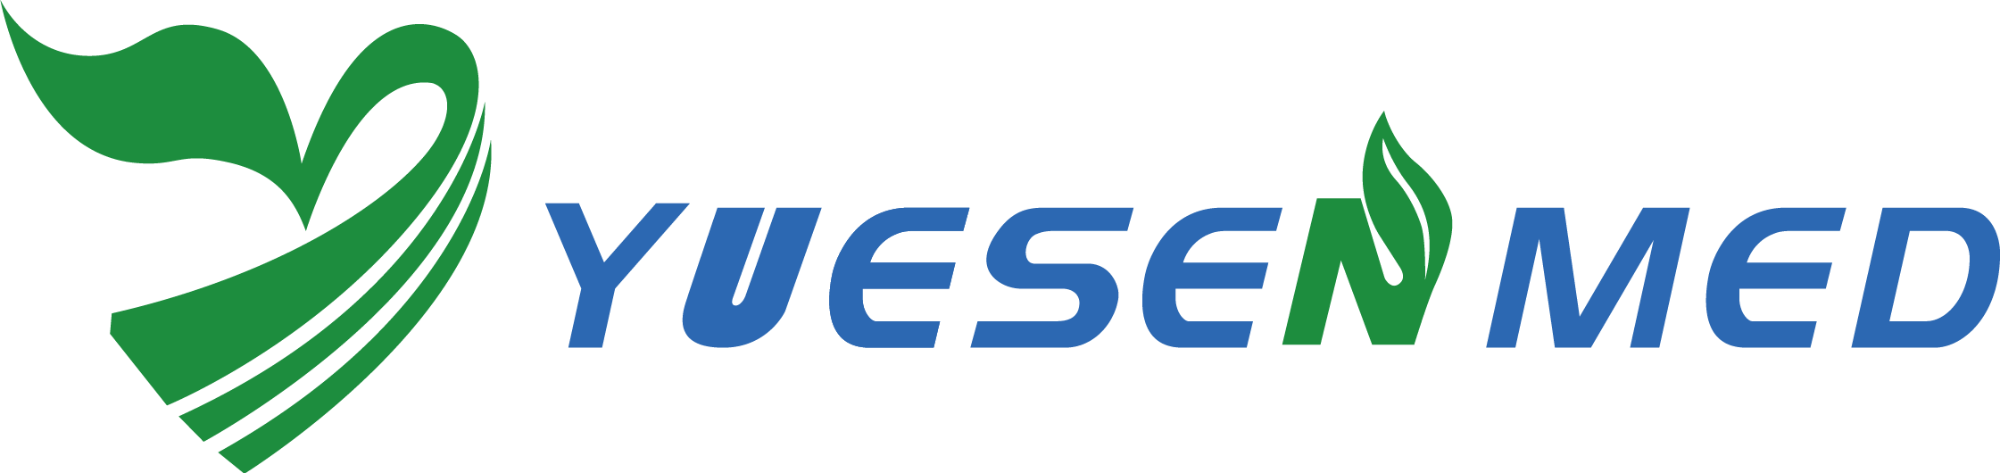 专业医疗设备供应商 -  Yuesen Med